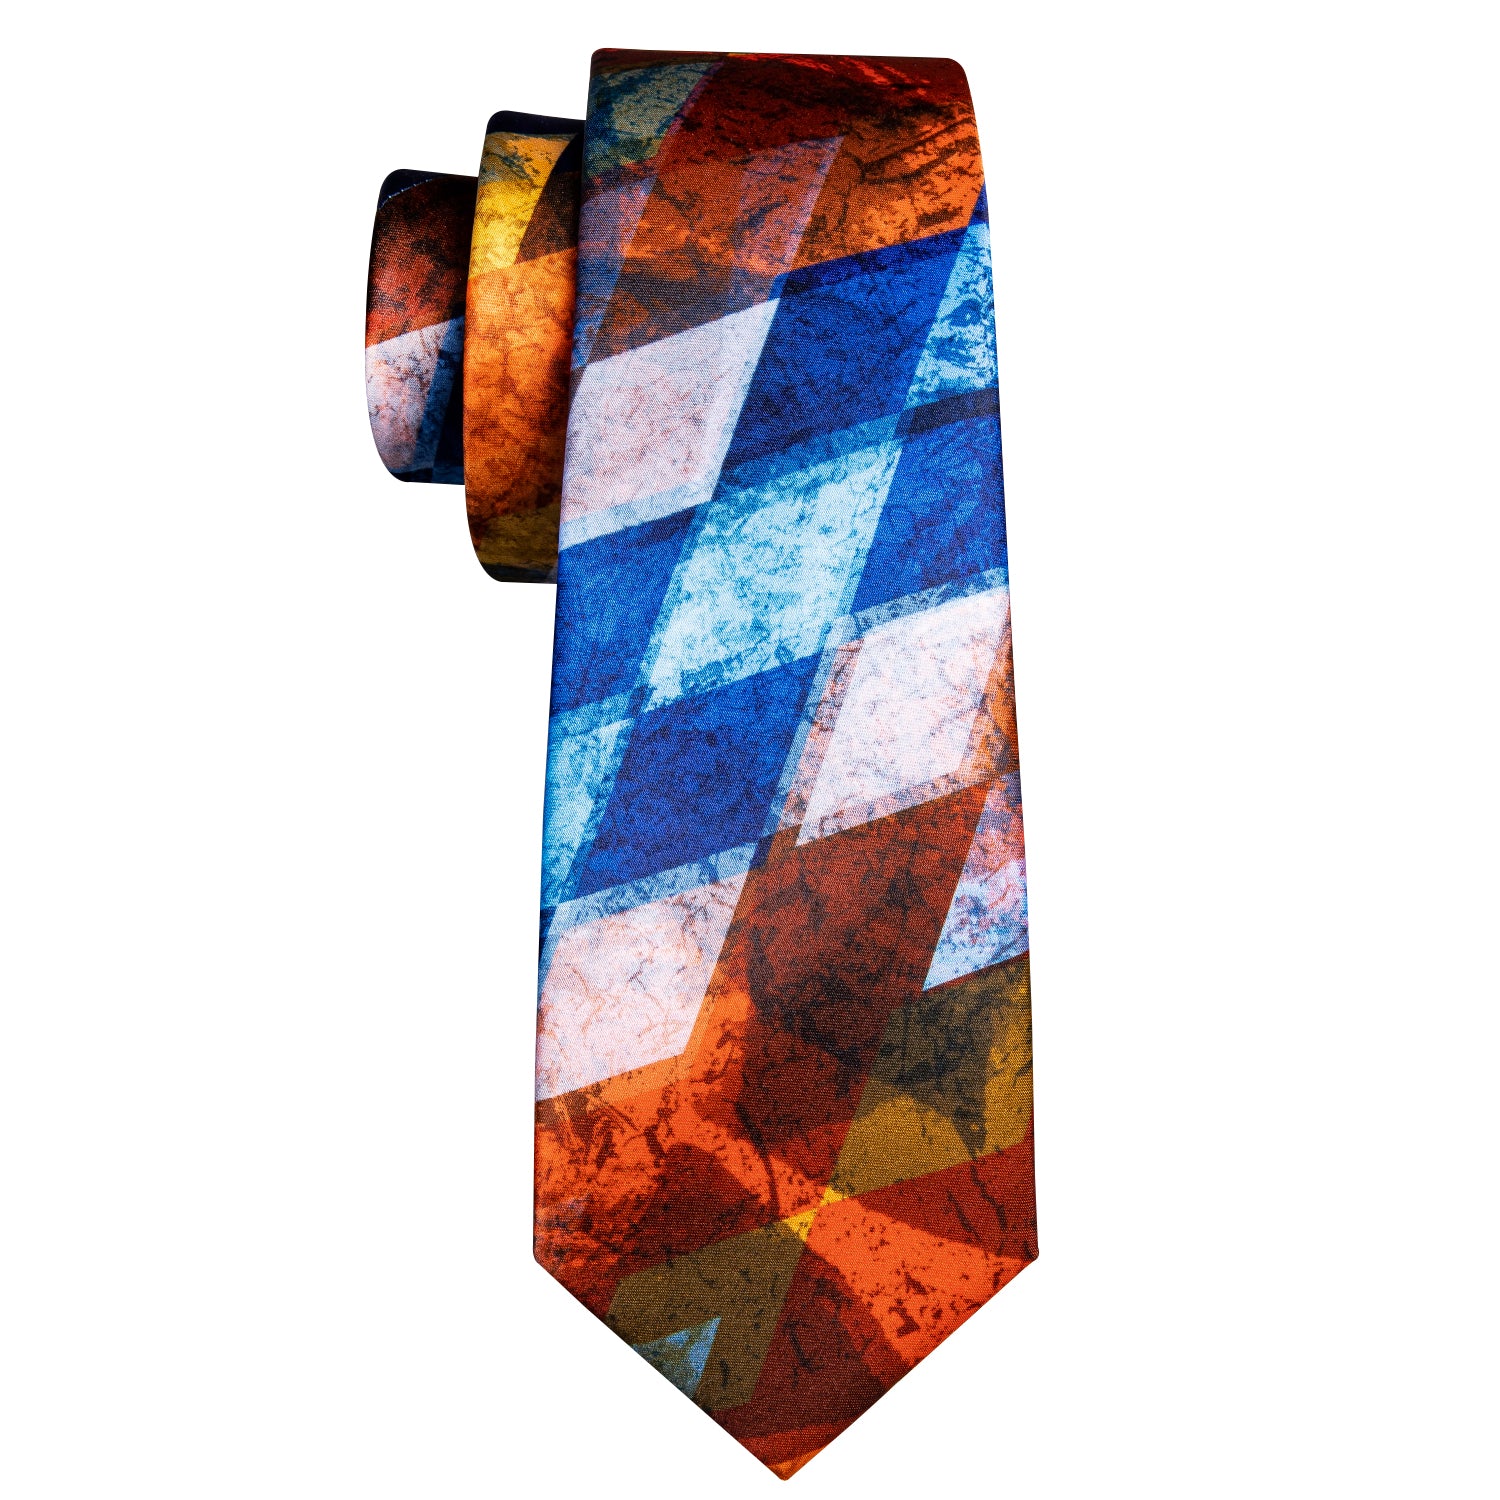 loght blue tie